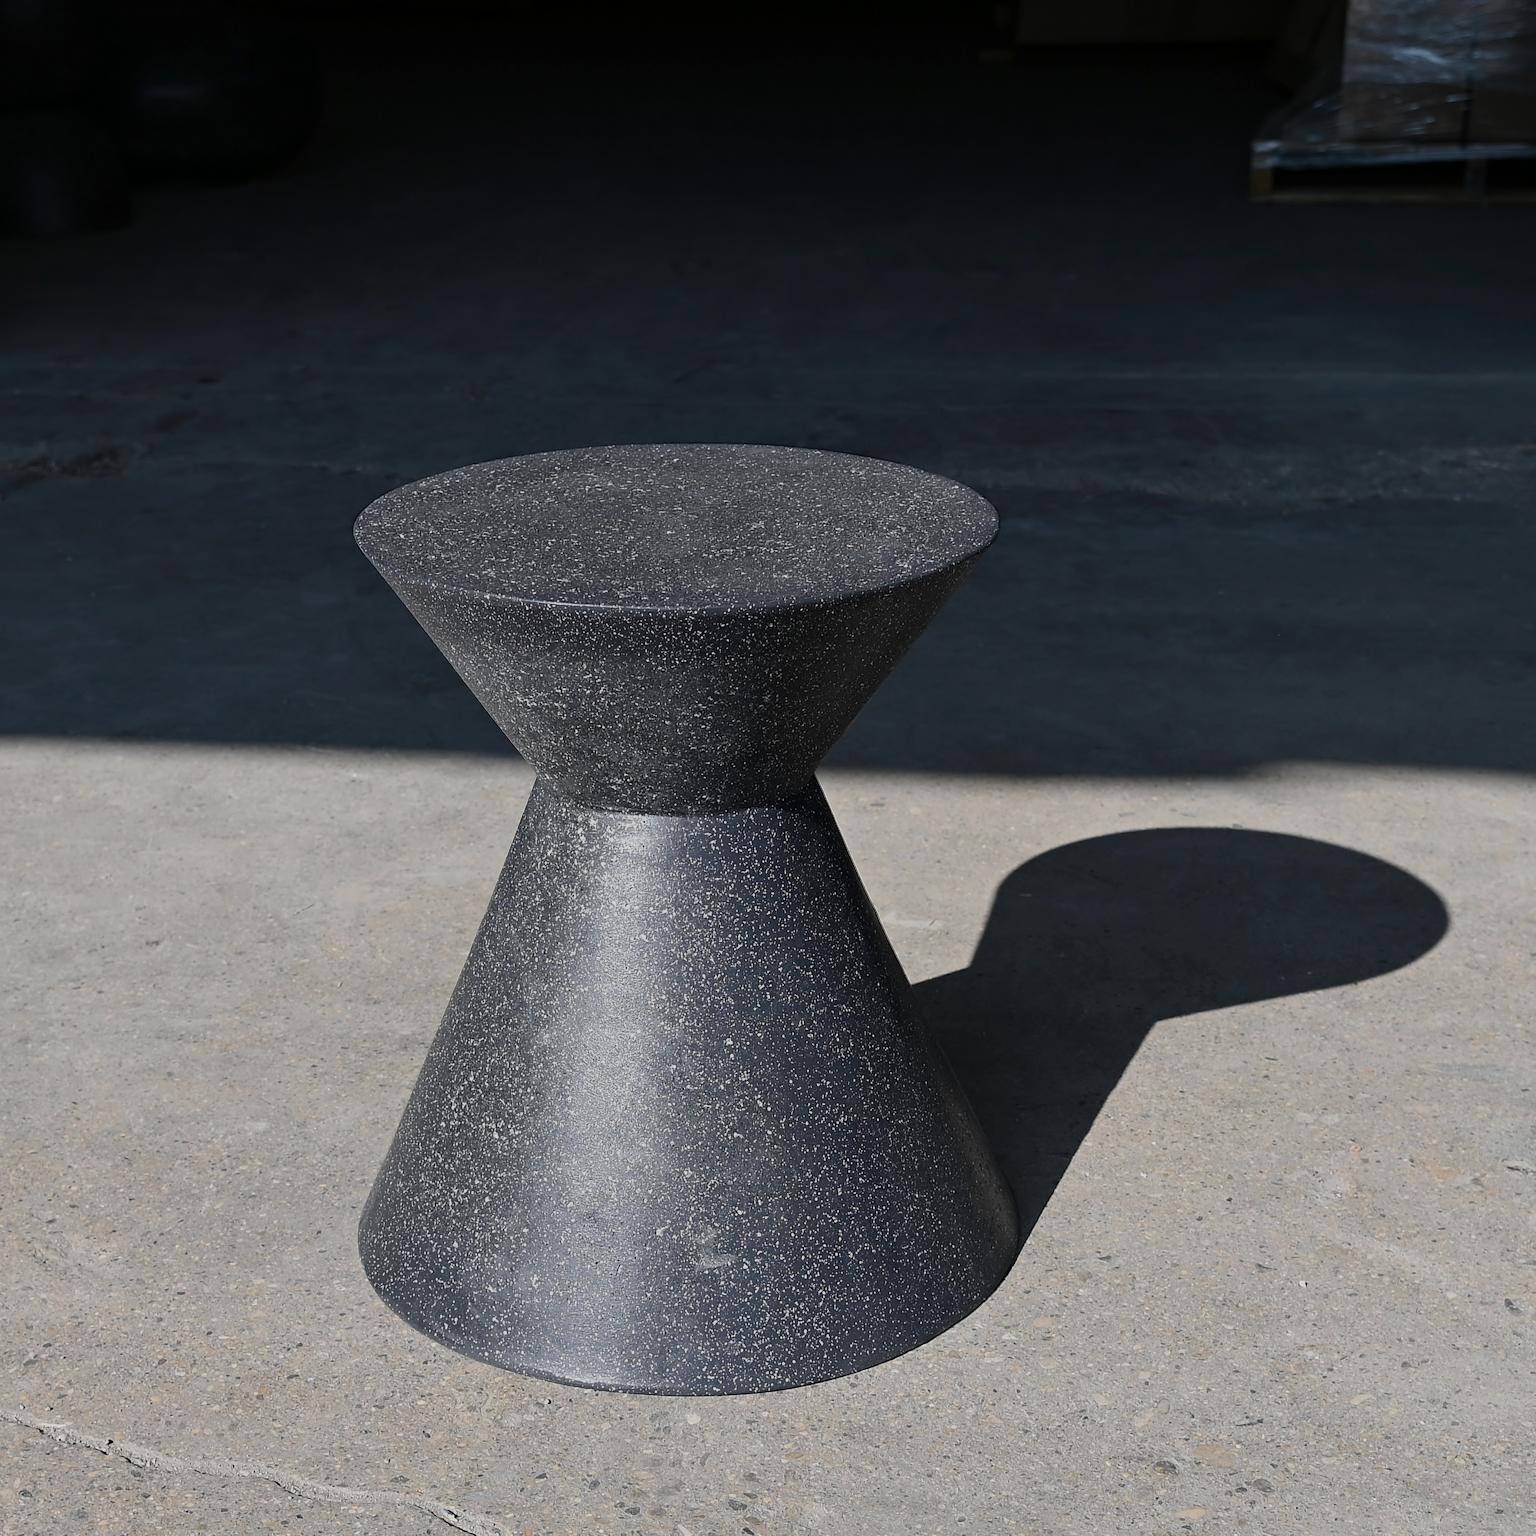 Une version minimaliste des volcans en éruption, la table d'appoint Kona apporte sophistication et conversation à tout environnement.

Dimensions : Diamètre 36 cm (14 po), hauteur 46 cm (18 po). Poids 9 kg (20 lb). Aucun assemblage